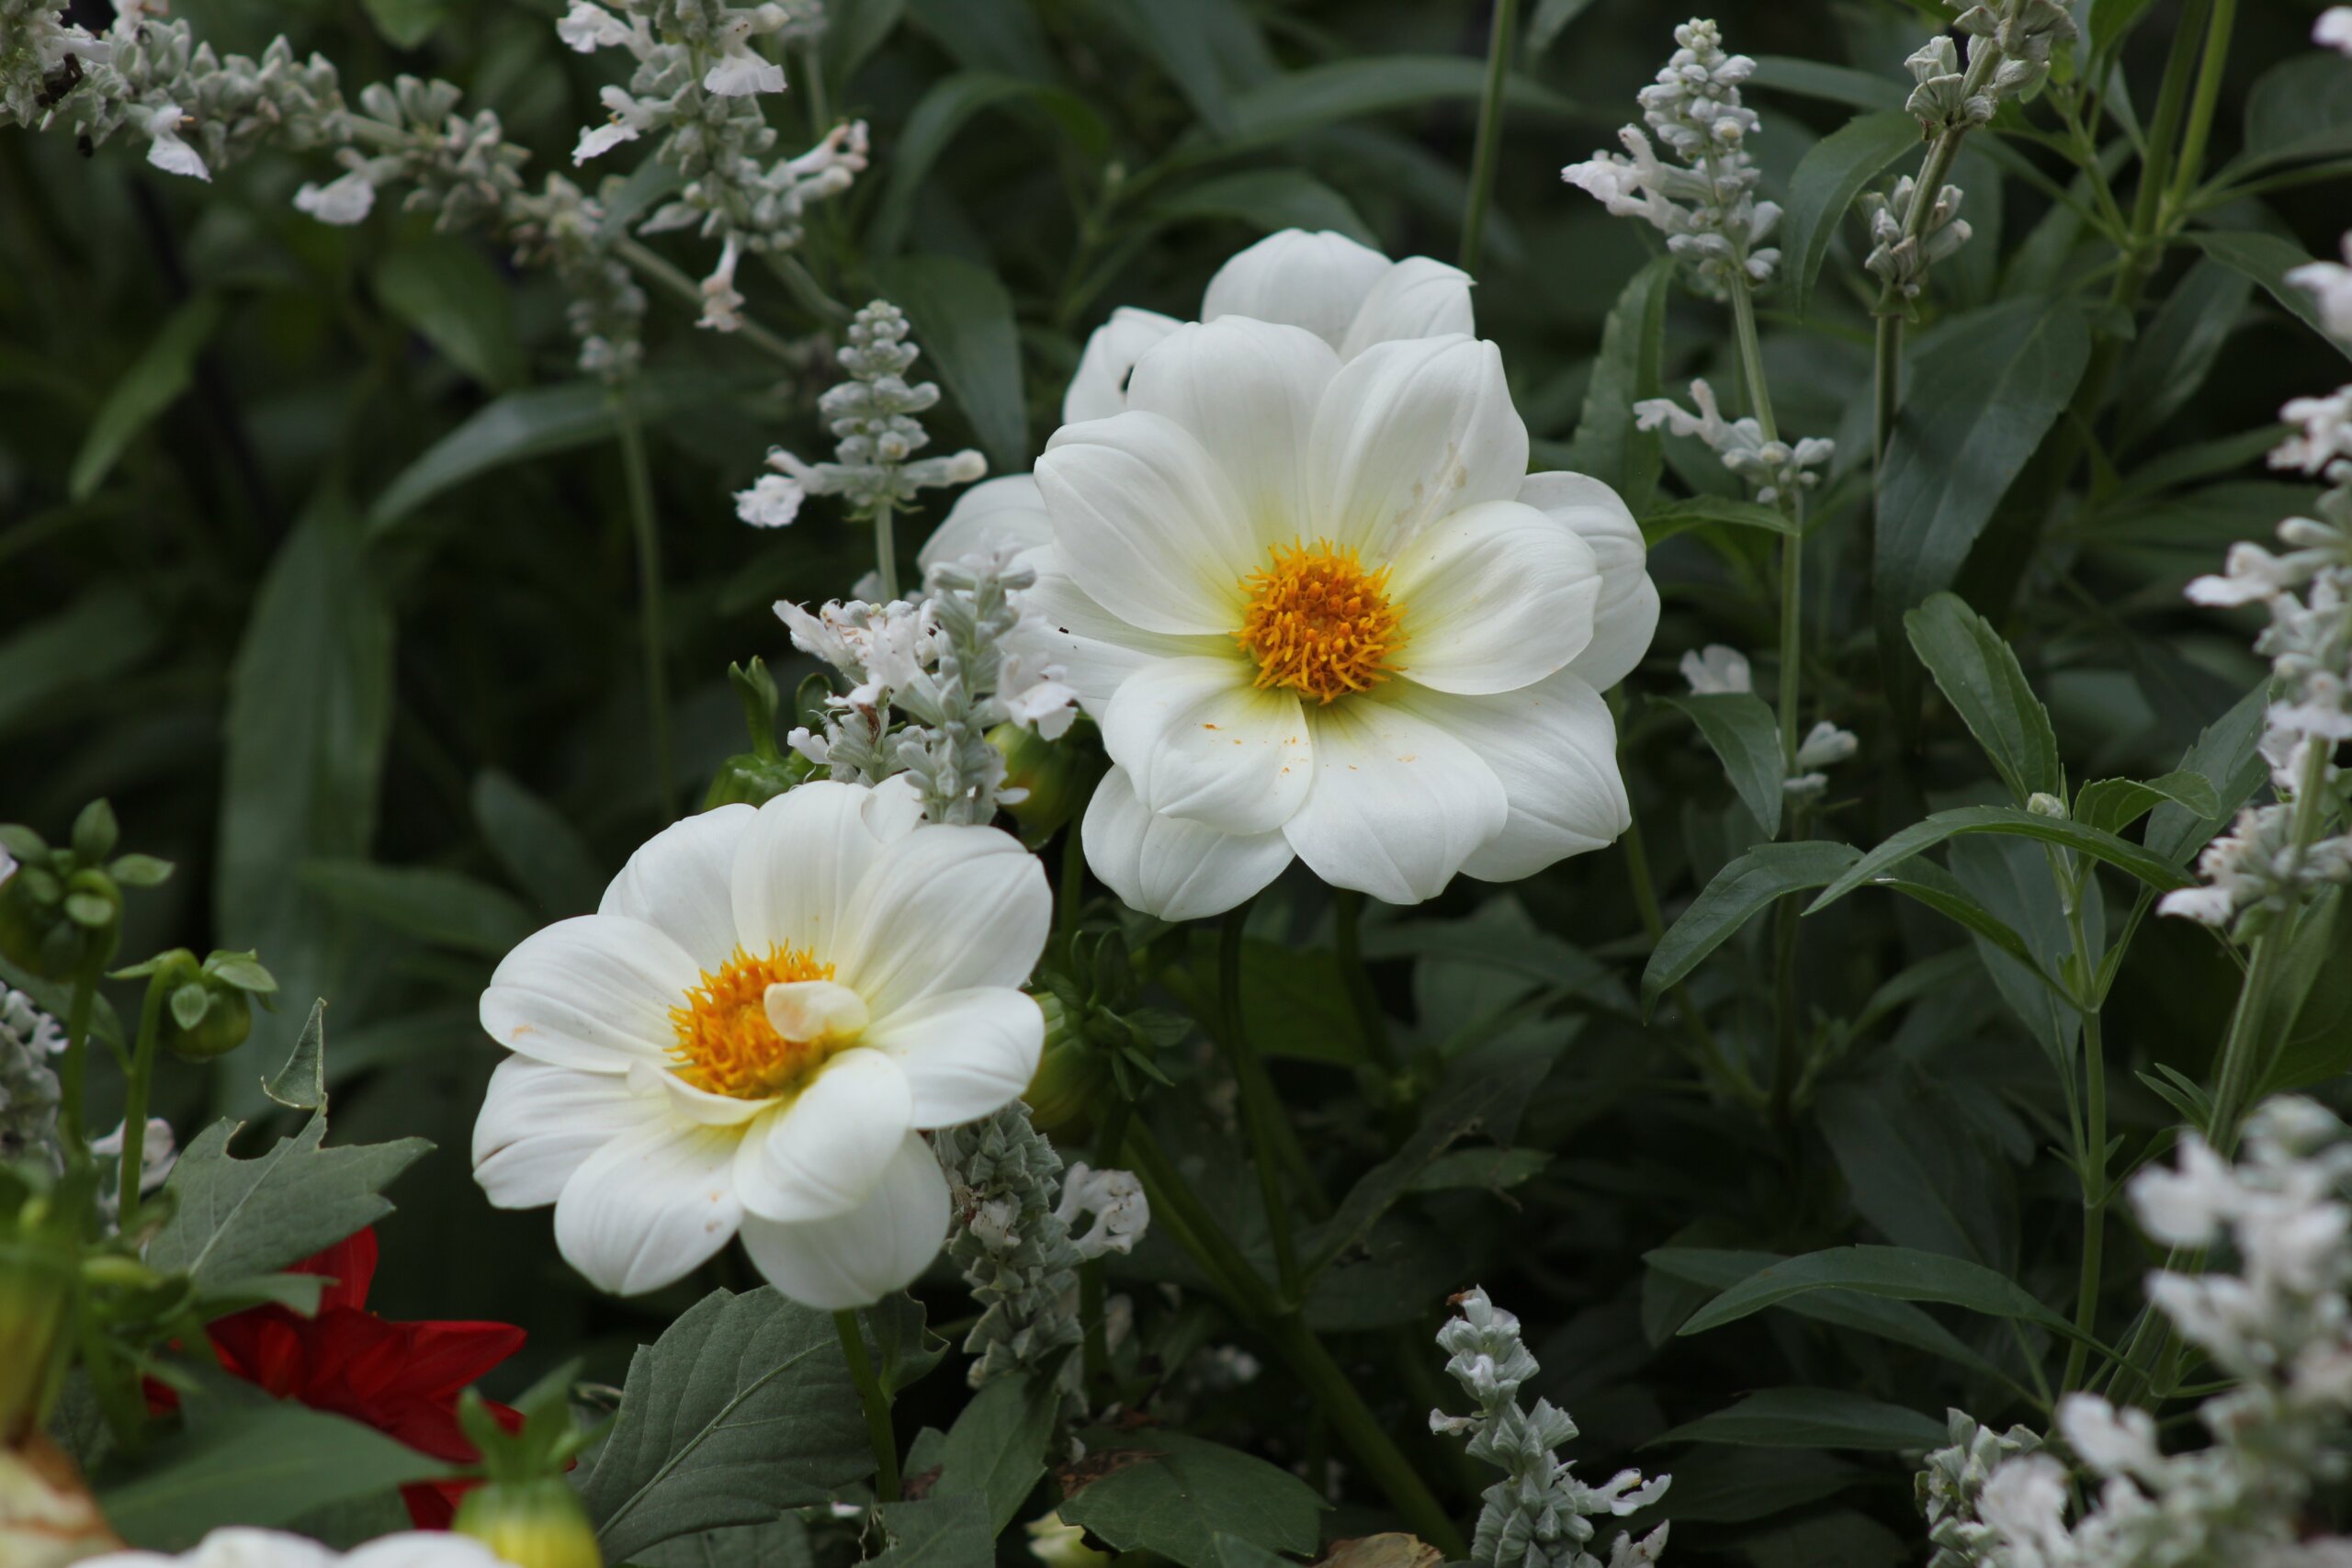 White flowers in garden